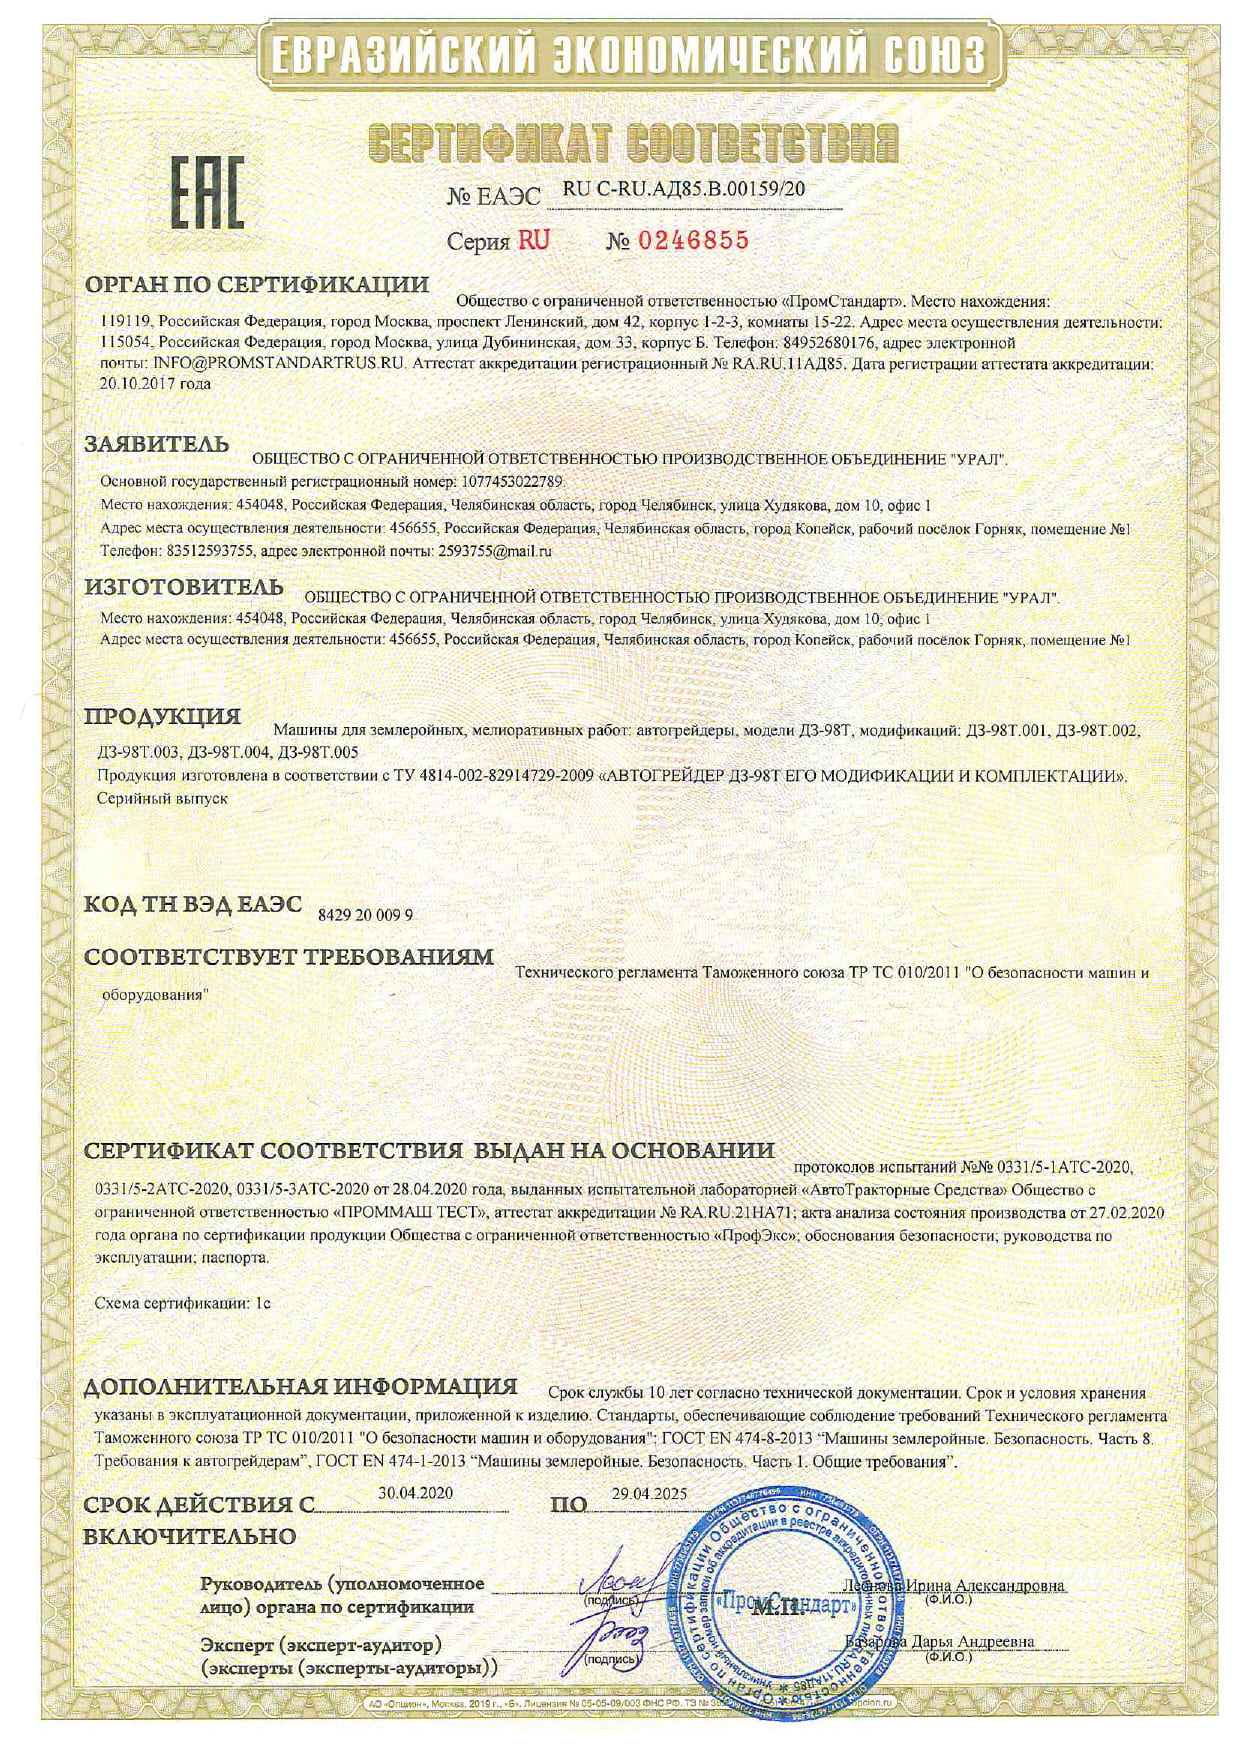 Сертификат соответствия (Евразийский экономический союз) на машины для землеройных, мелиоративных работ - автогрейдеры ДЗ-98Т модификаций ДЗ-98Т.001, ДЗ-98Т.002, ДЗ-98Т.004, ДЗ-98Т.005. Спецтехника изготовлена в соответствии с ТУ 4814-002-82914729-2009 Автогрейдер ДЗ-98Т, его модификации и комплектации - ural-dz.su